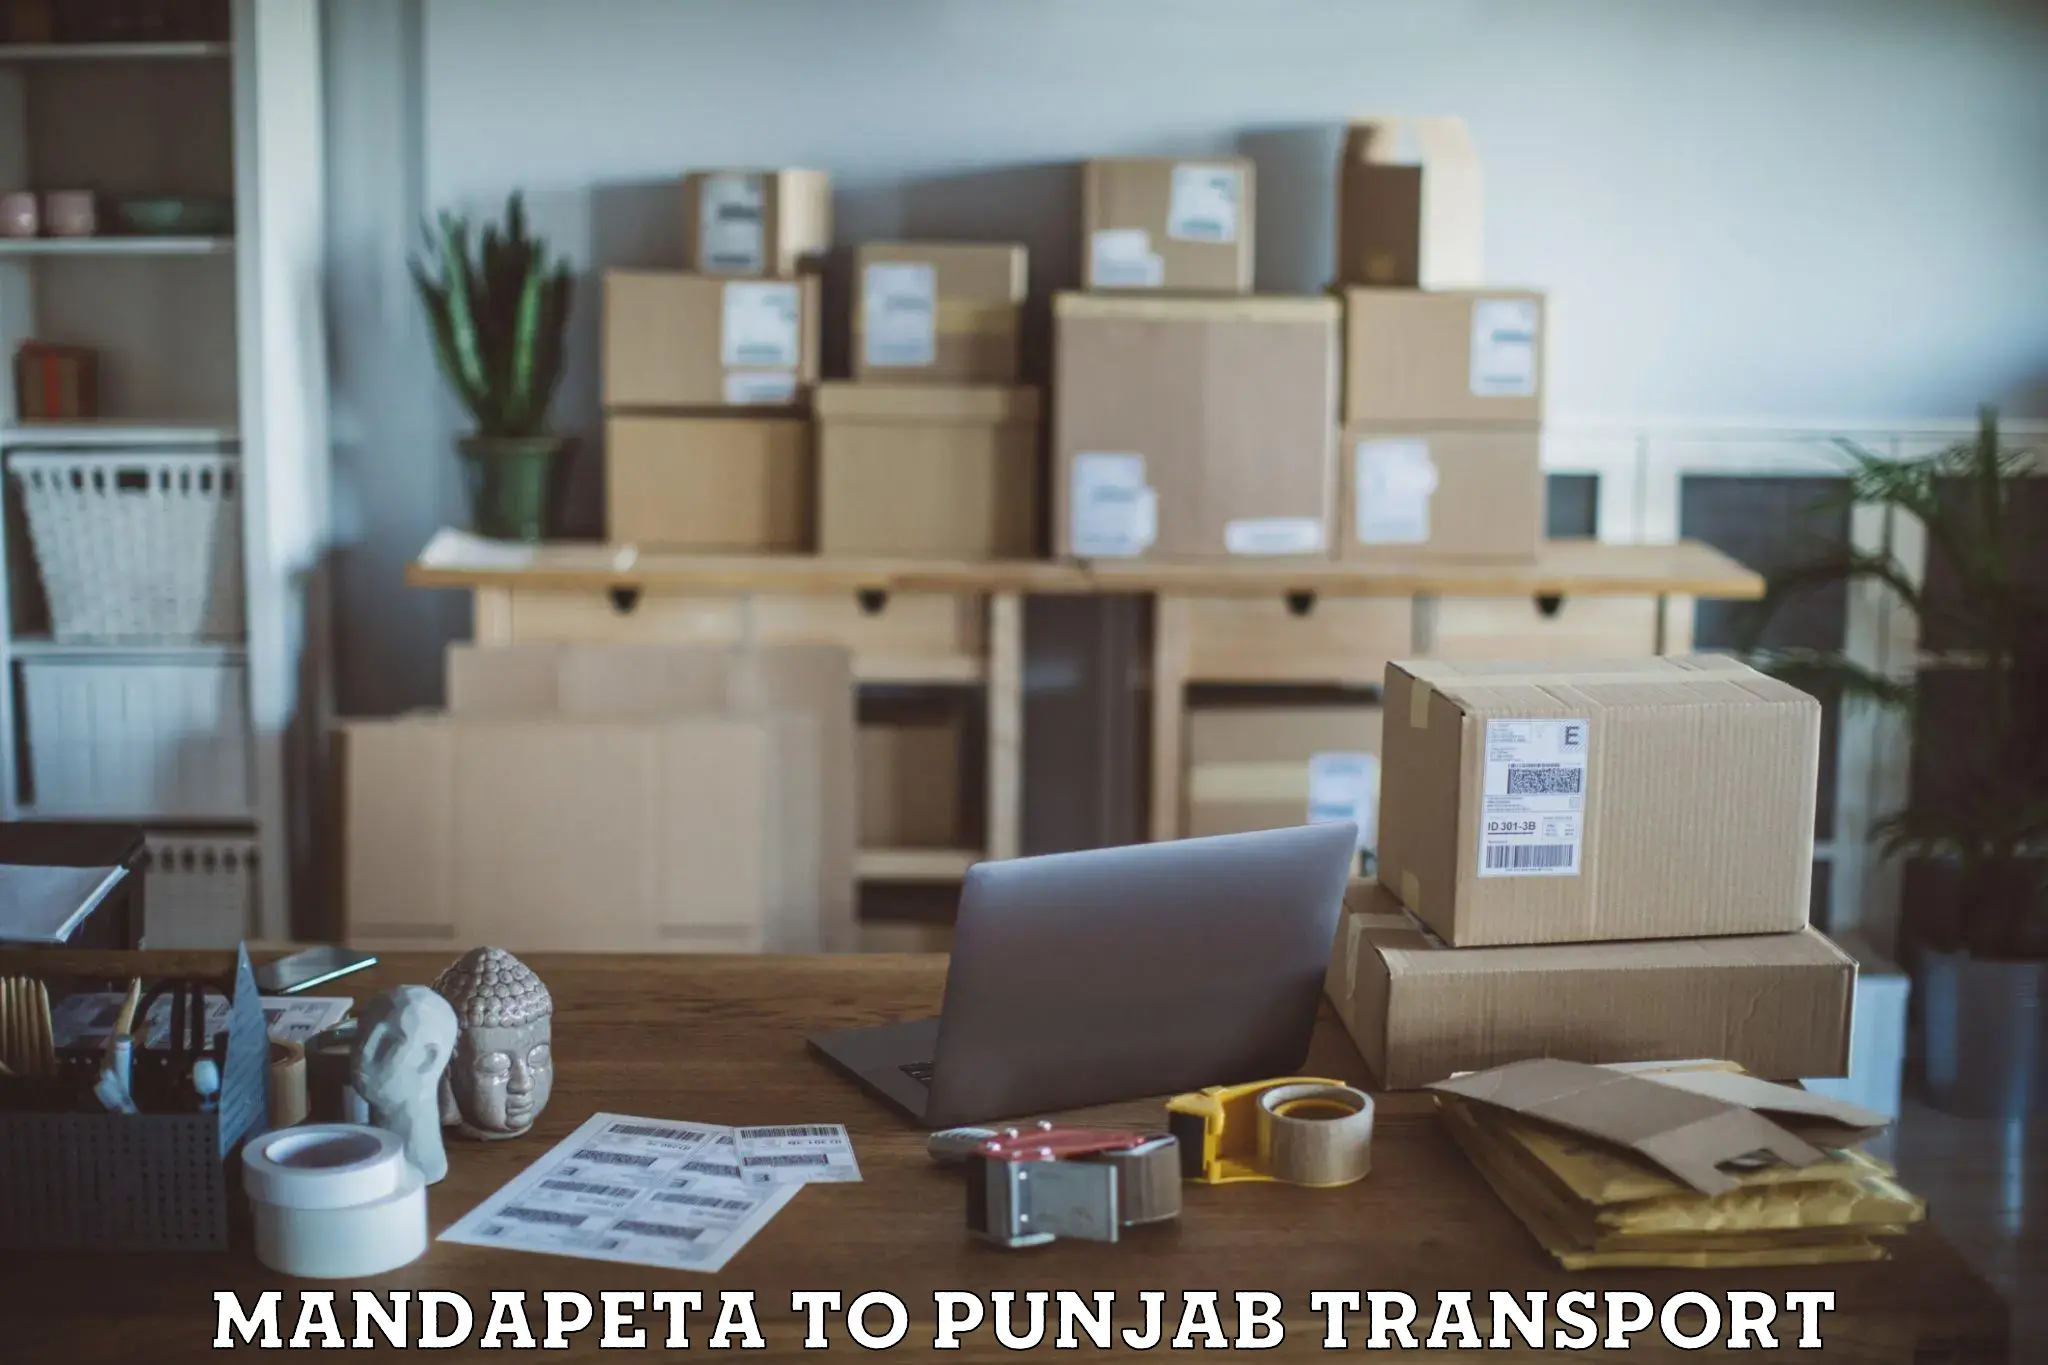 Two wheeler parcel service Mandapeta to Punjab